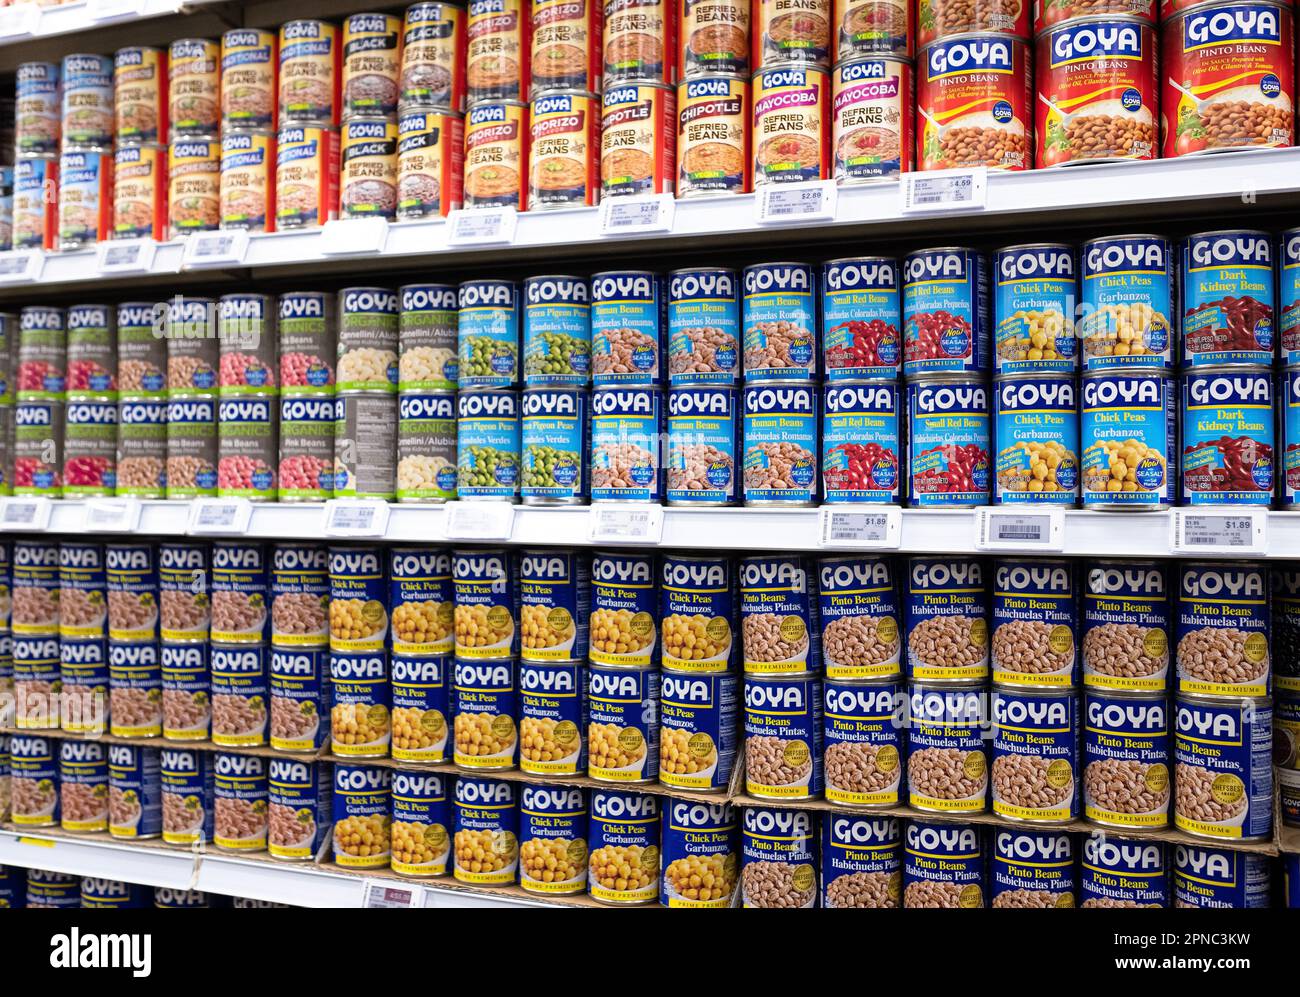 Verschiedene Goya-Bohnen im Food Bazaar Supermarkt in Long Island City, der auf internationale Gerichte spezialisiert ist Stockfoto